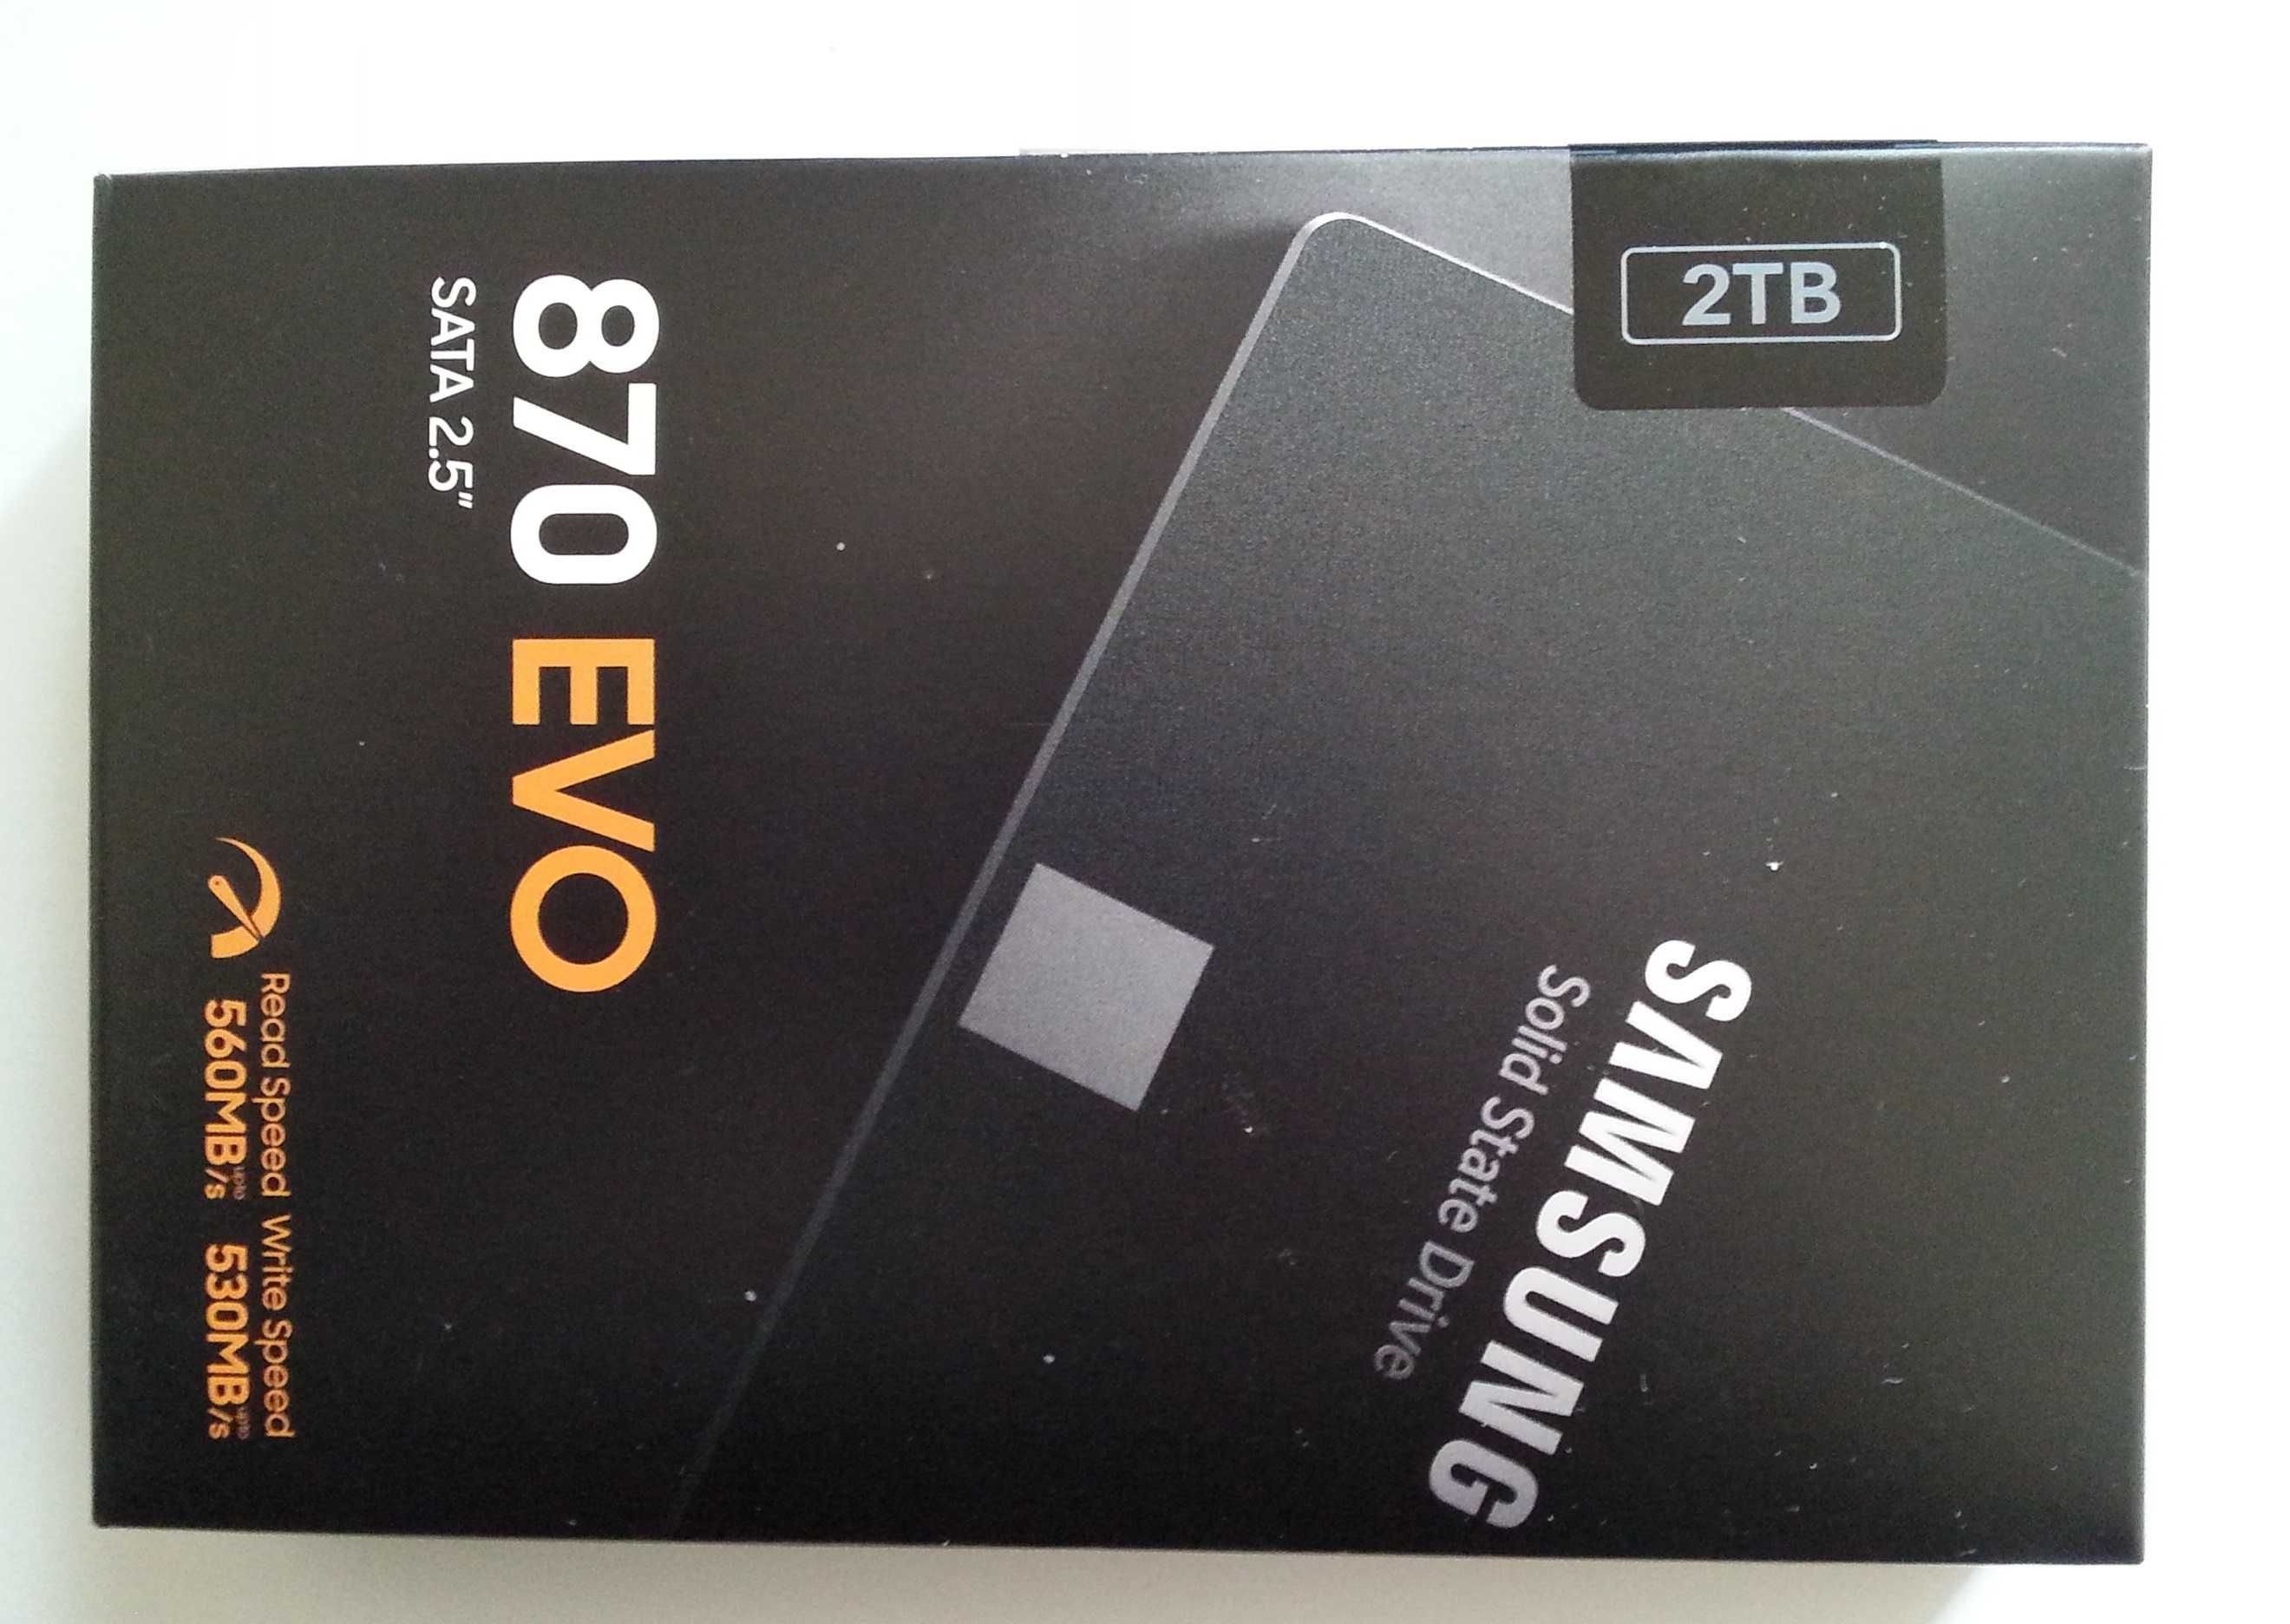 Laptop-Nowy,zapakowany.Samsung 870 EVO- 2 TB-dysk SSD.Polecam inne